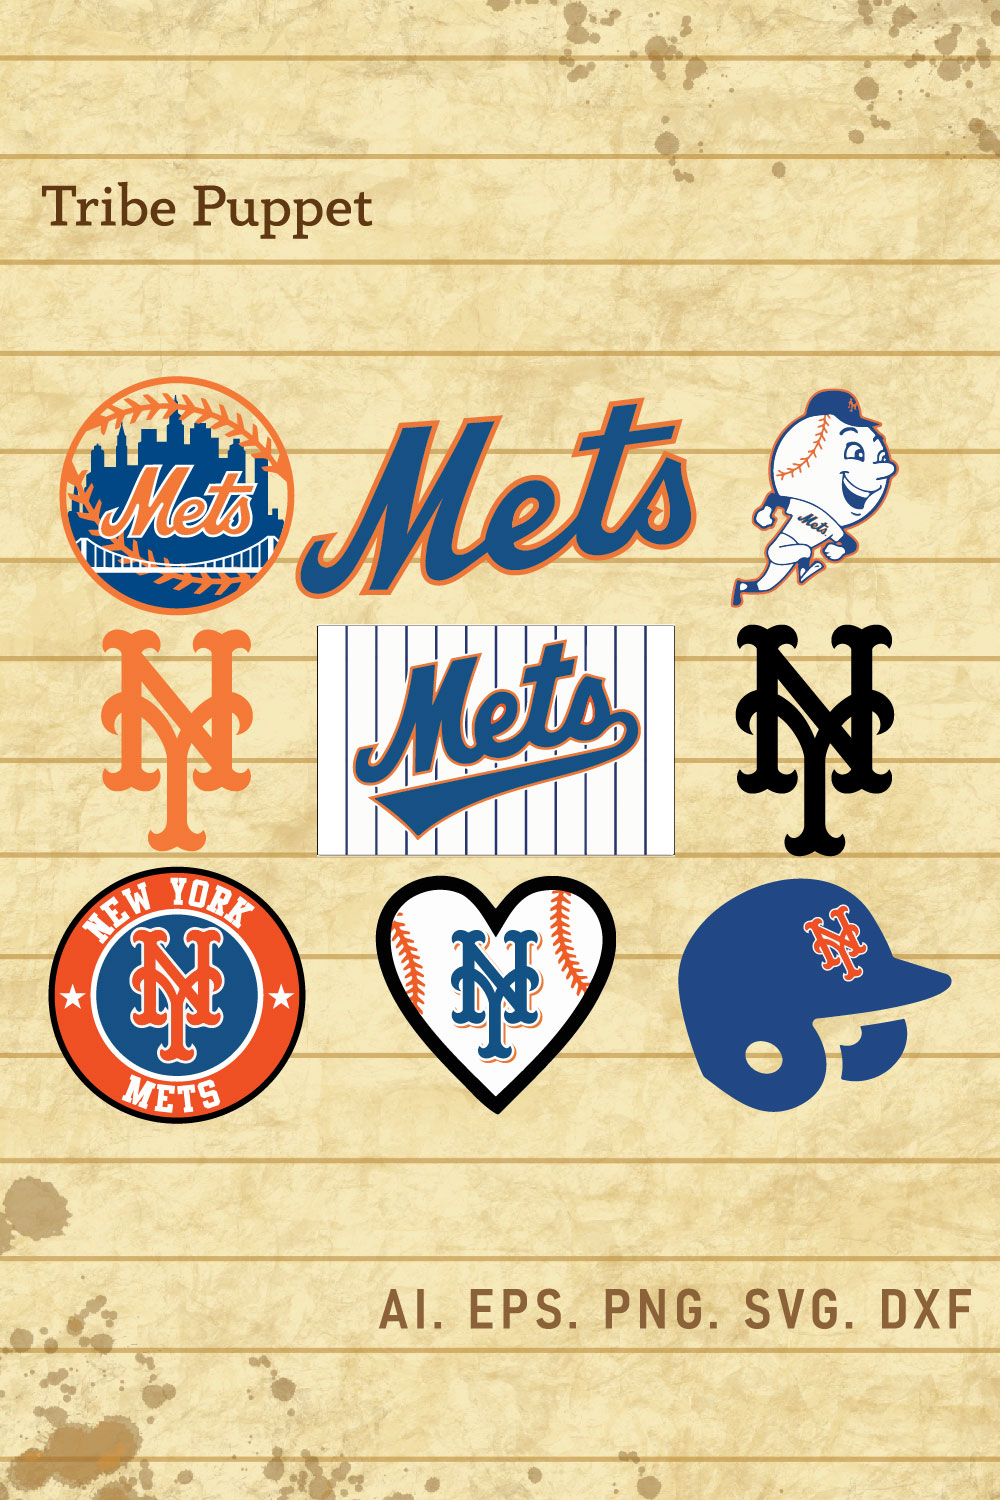 New York Mets Fashion, Style, Fan Gear on Pinterest